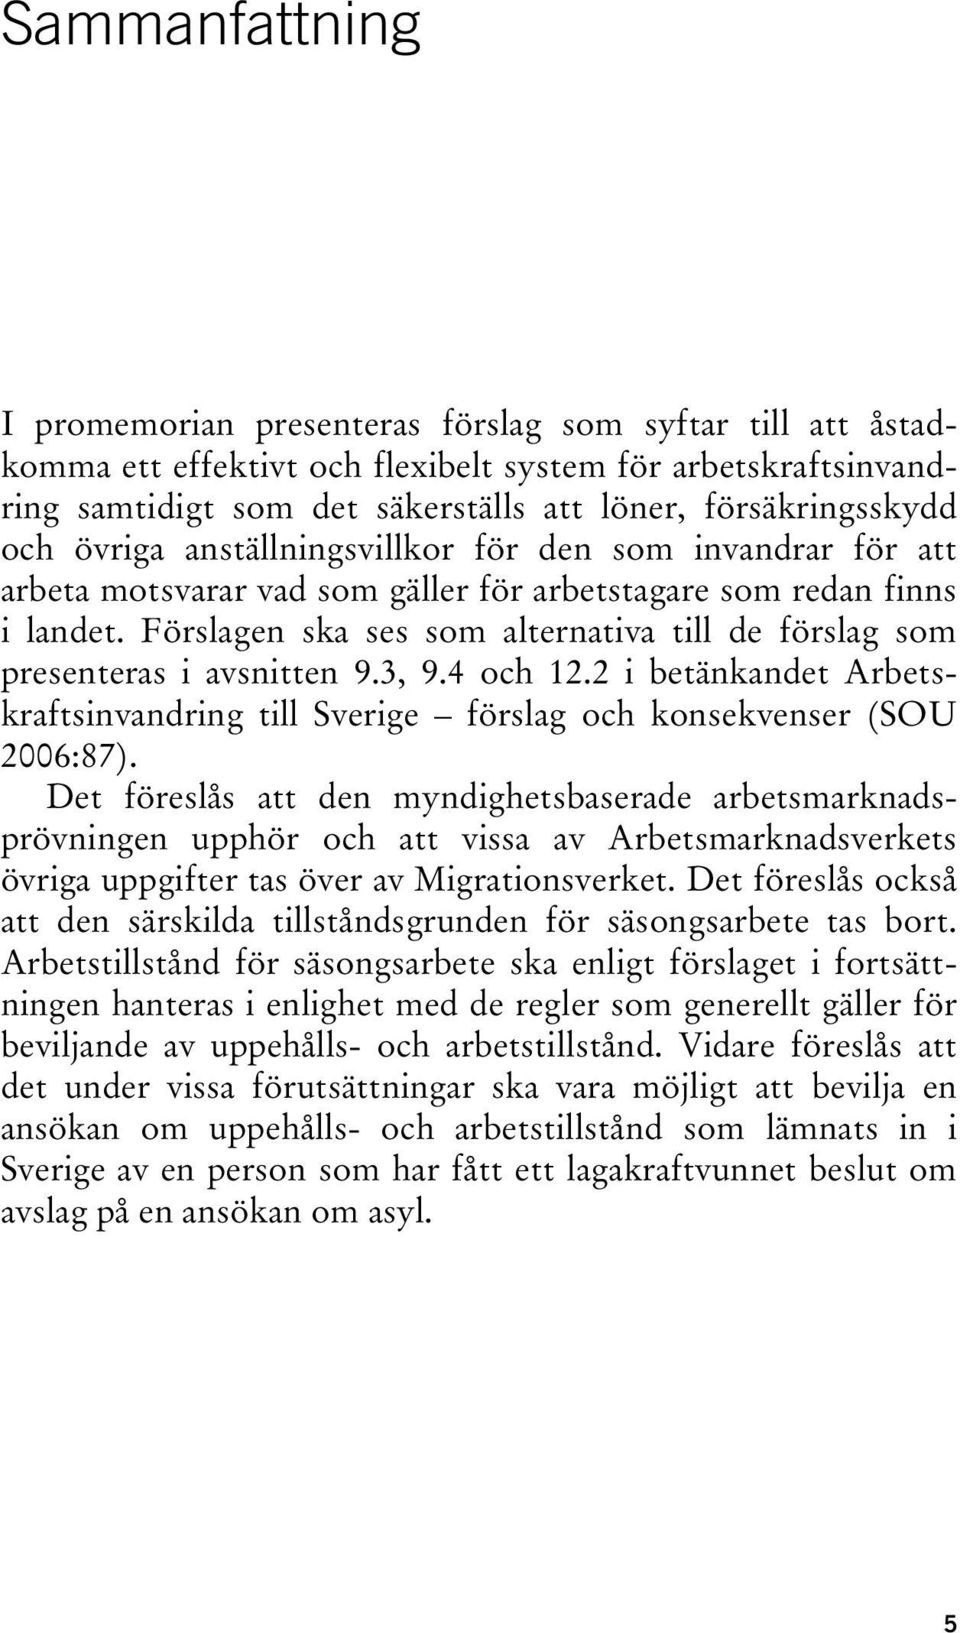 Förslagen ska ses som alternativa till de förslag som presenteras i avsnitten 9.3, 9.4 och 12.2 i betänkandet Arbetskraftsinvandring till Sverige förslag och konsekvenser (SOU 2006:87).